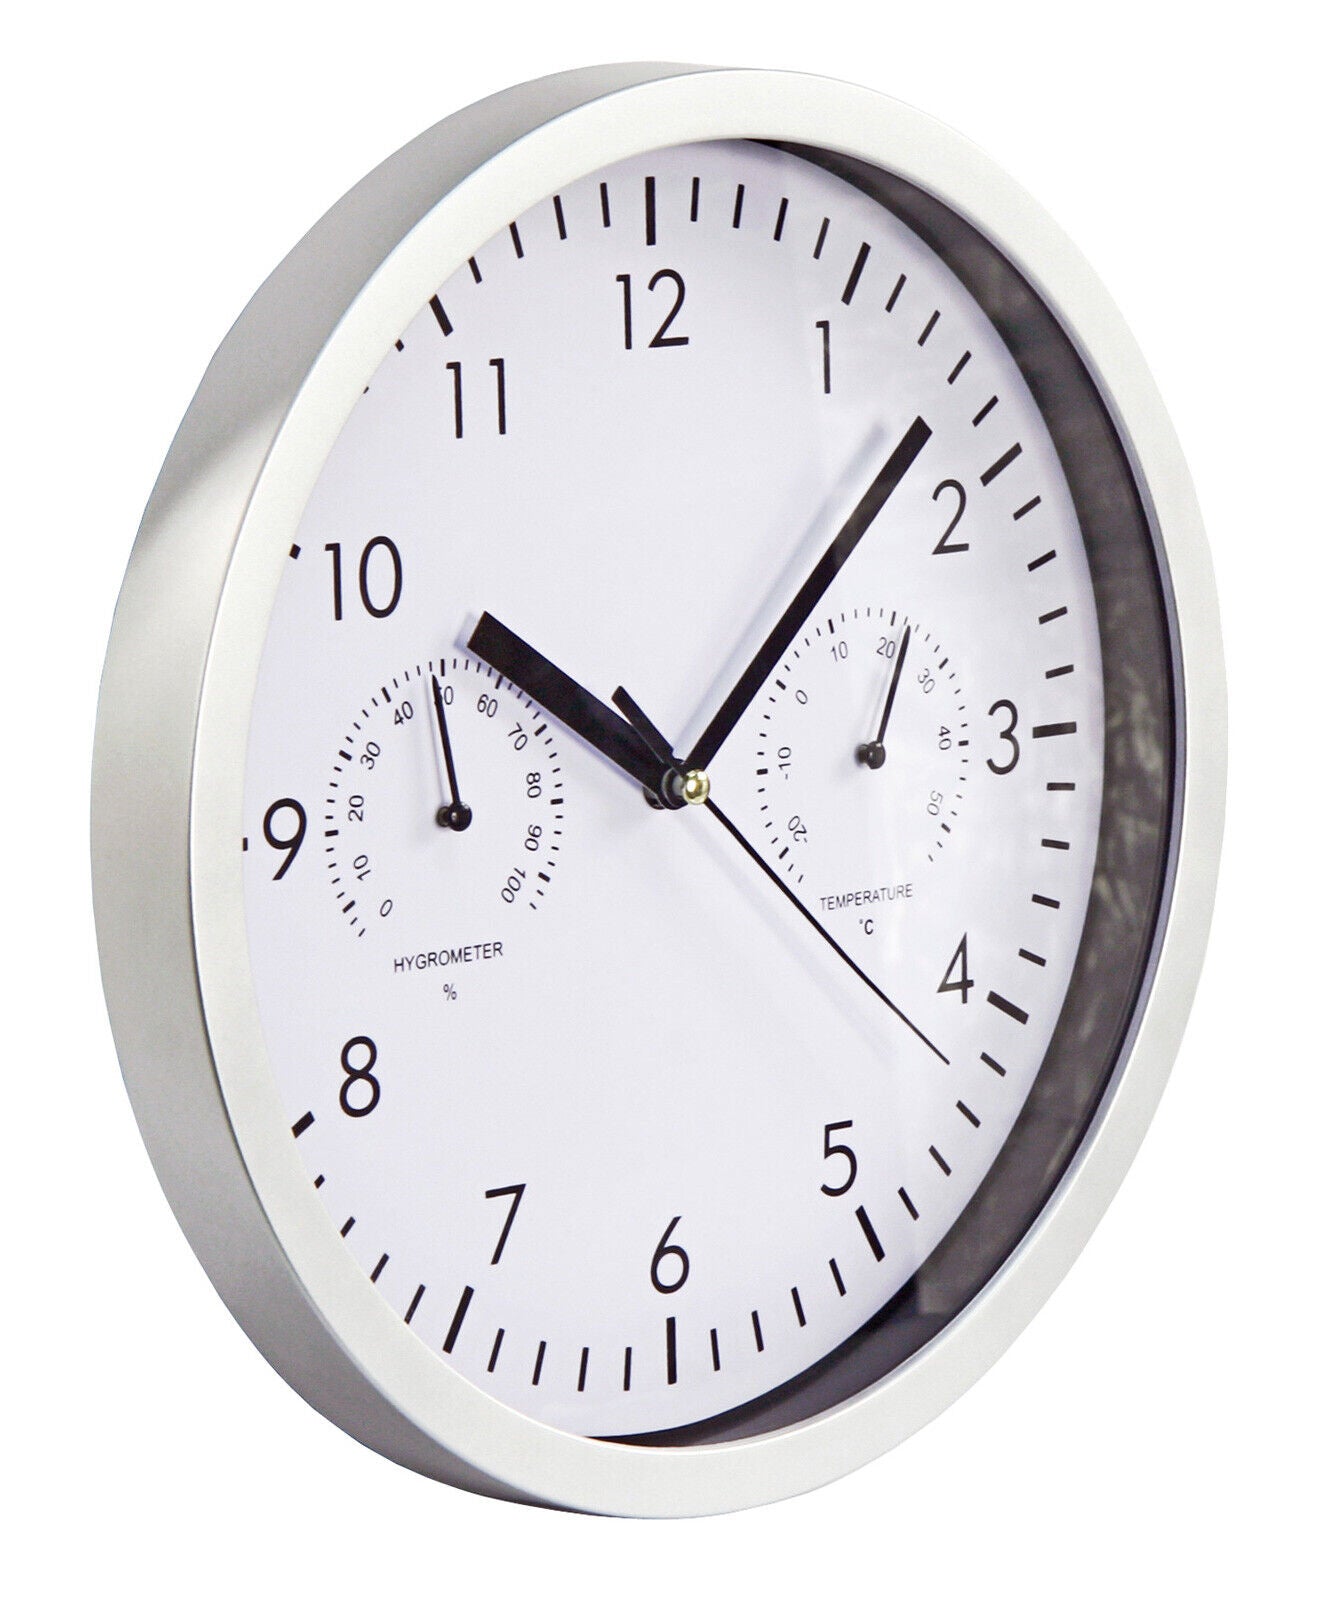 Wand Büro Bahnhofs Uhr mit Thermo + Hygrometer Anzeige weißes Ziffernblatt Ø25cm